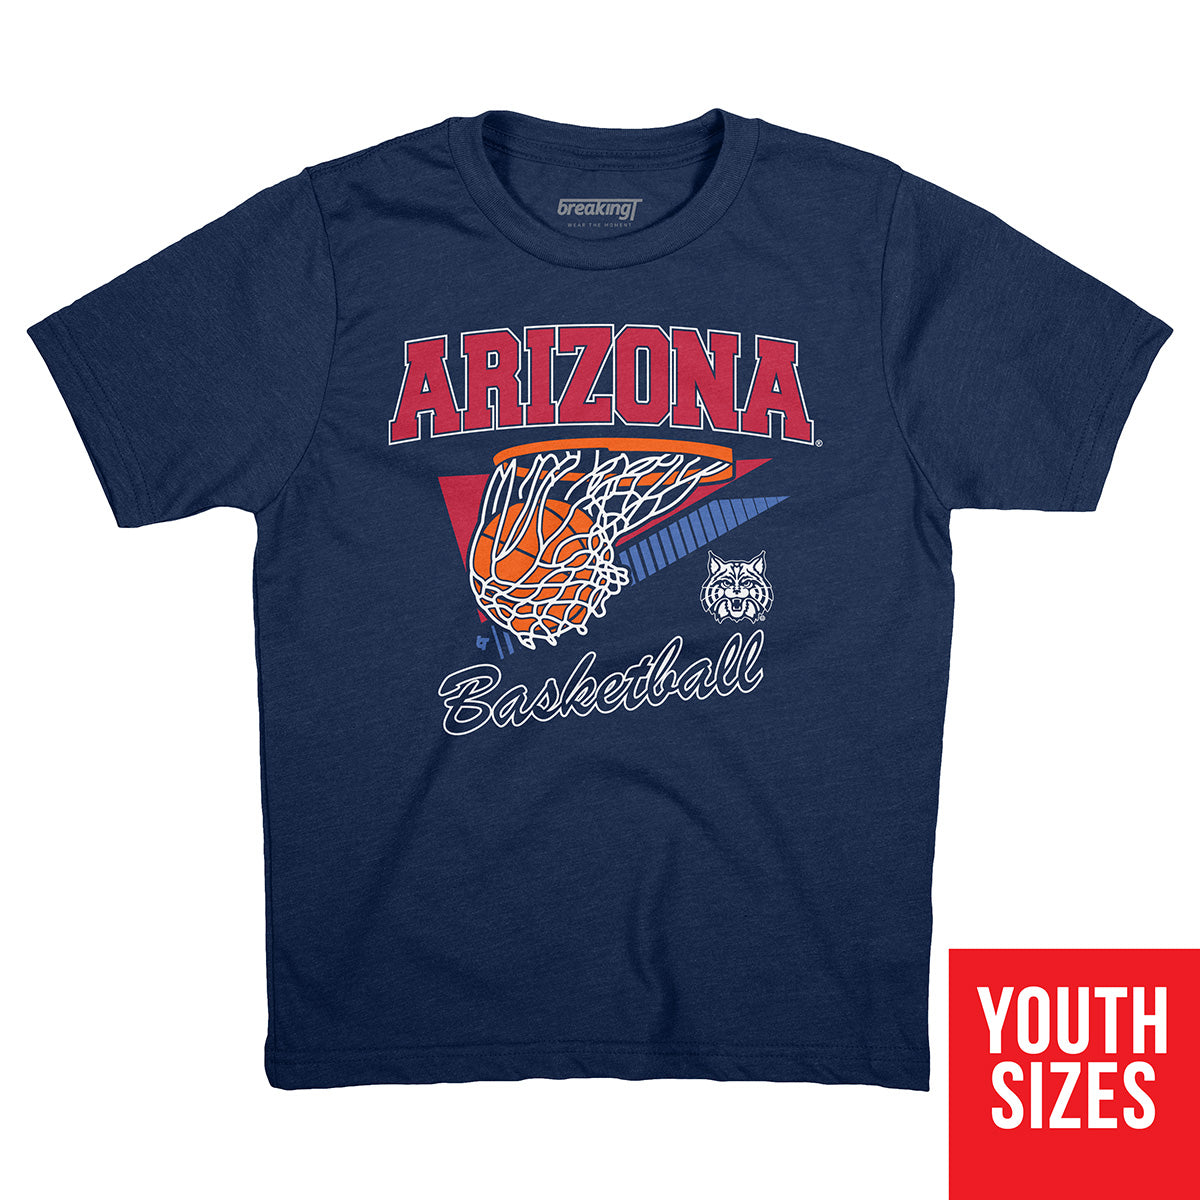 Arizona Wildcats kids jersey